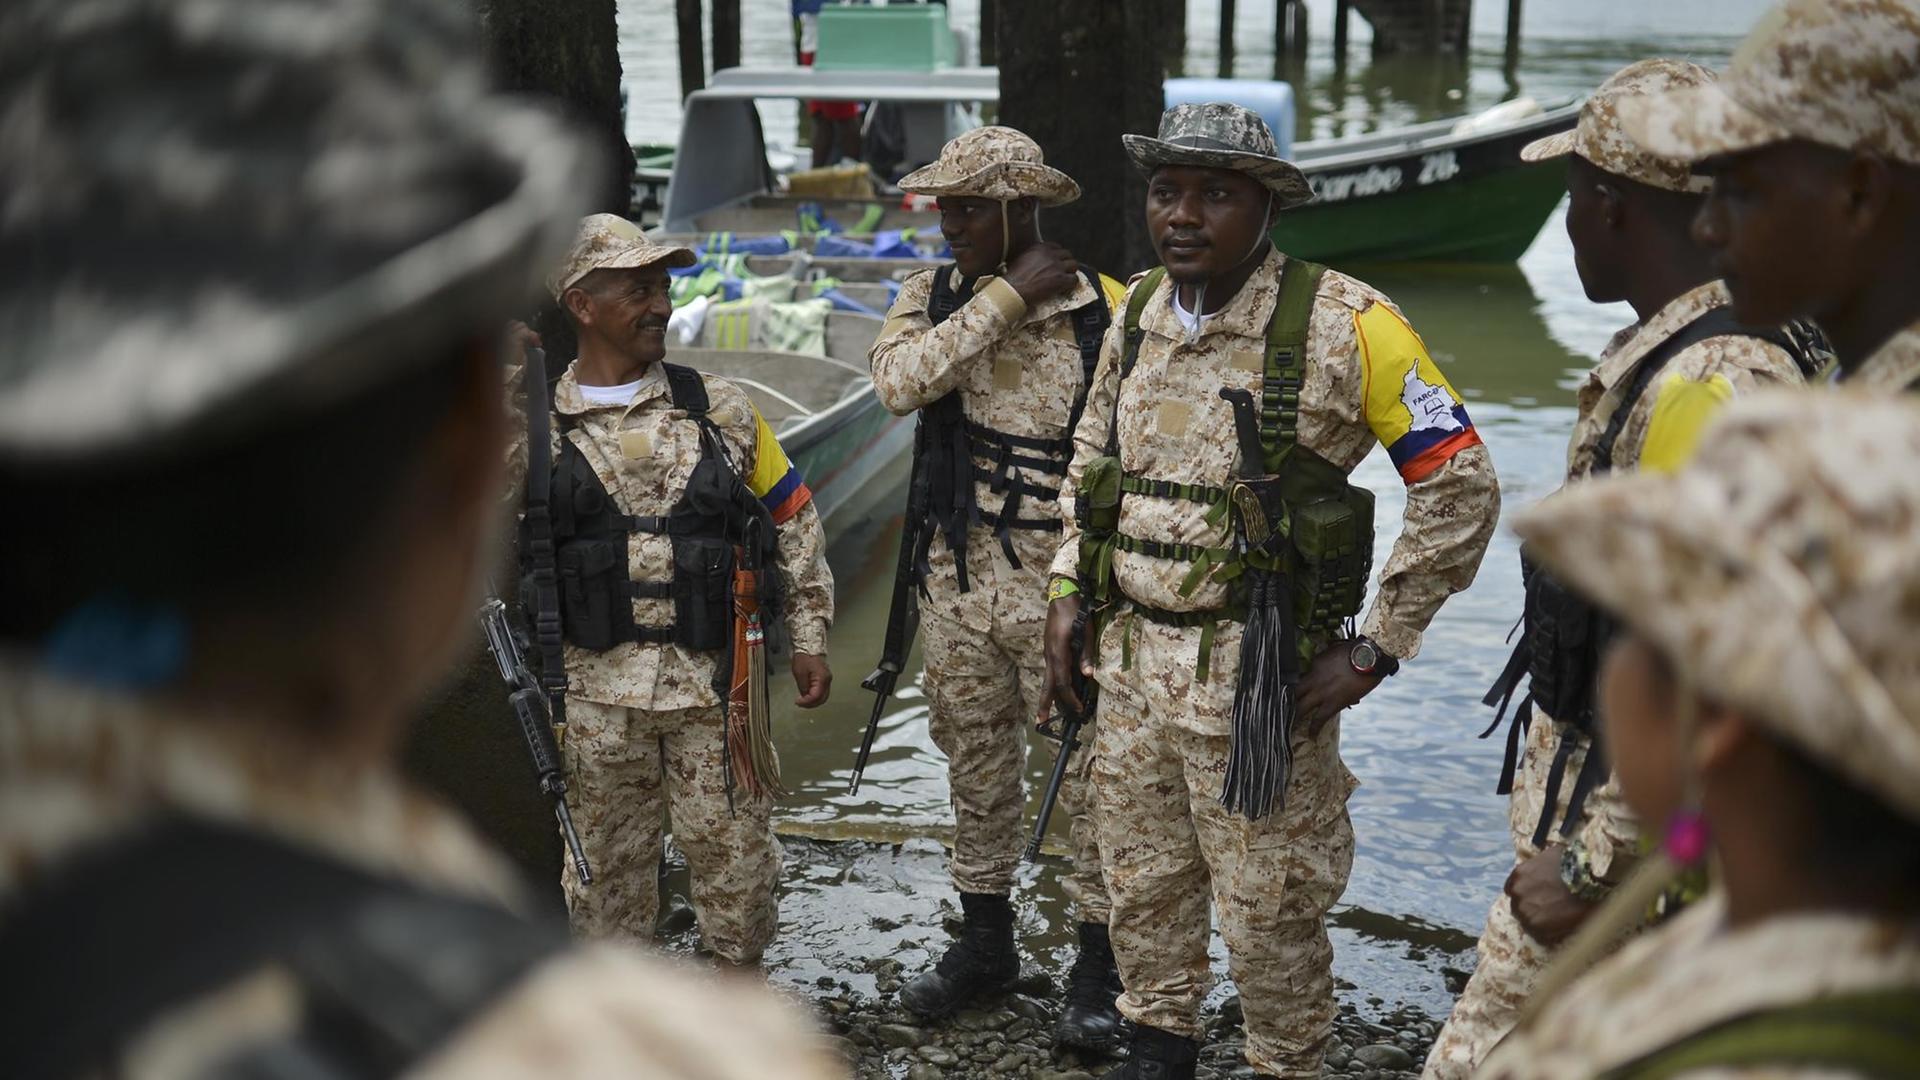 Mehrere Mitglieder der FARC-Guerilla in Kolumbien machen sich auf den Weg in von der UNO überwachte Zonen, wo sie ihre Waffen abgeben sollen.